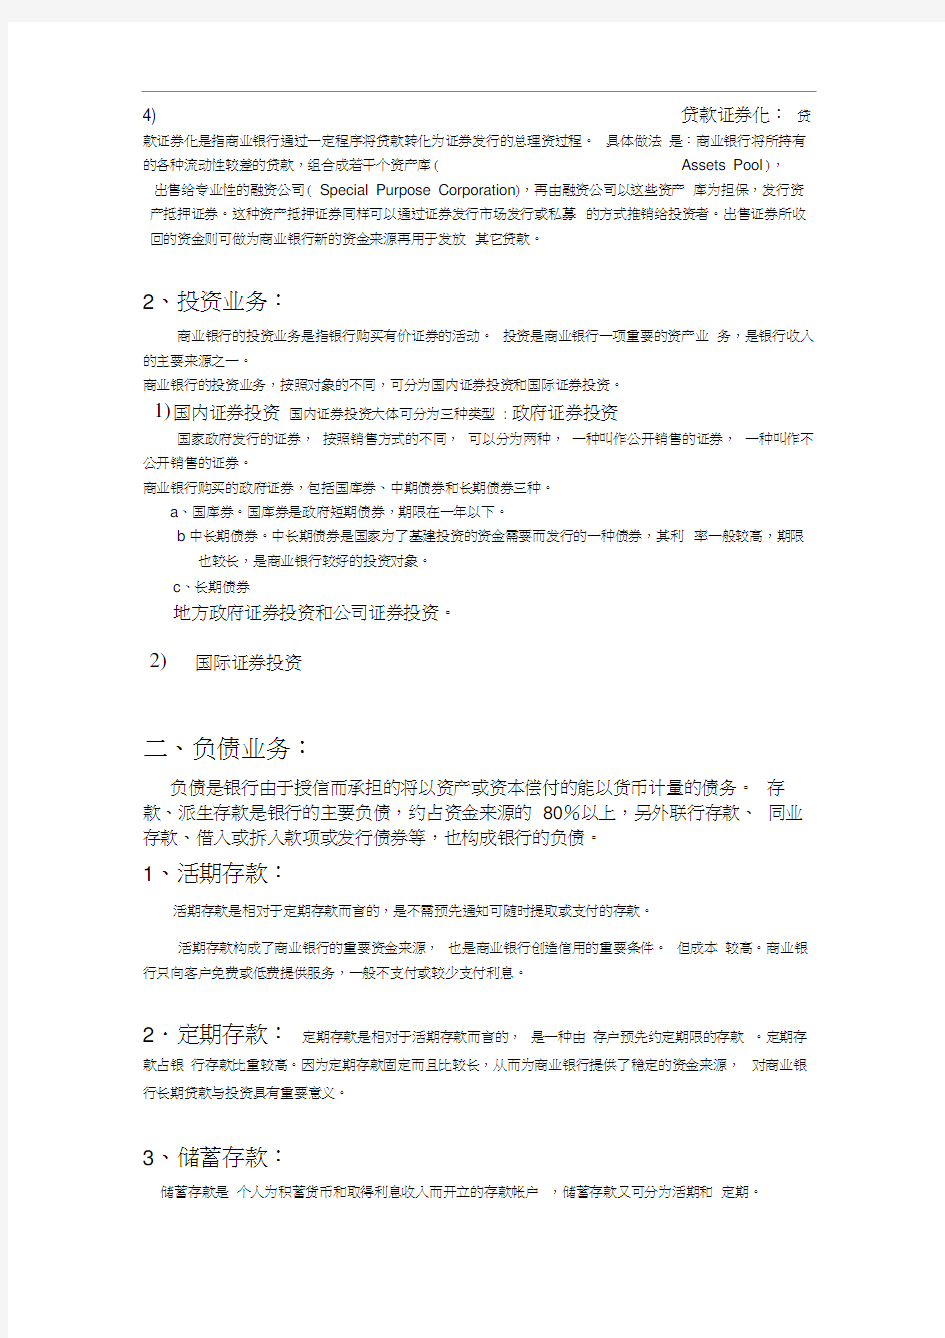 中国商业银行业务分类